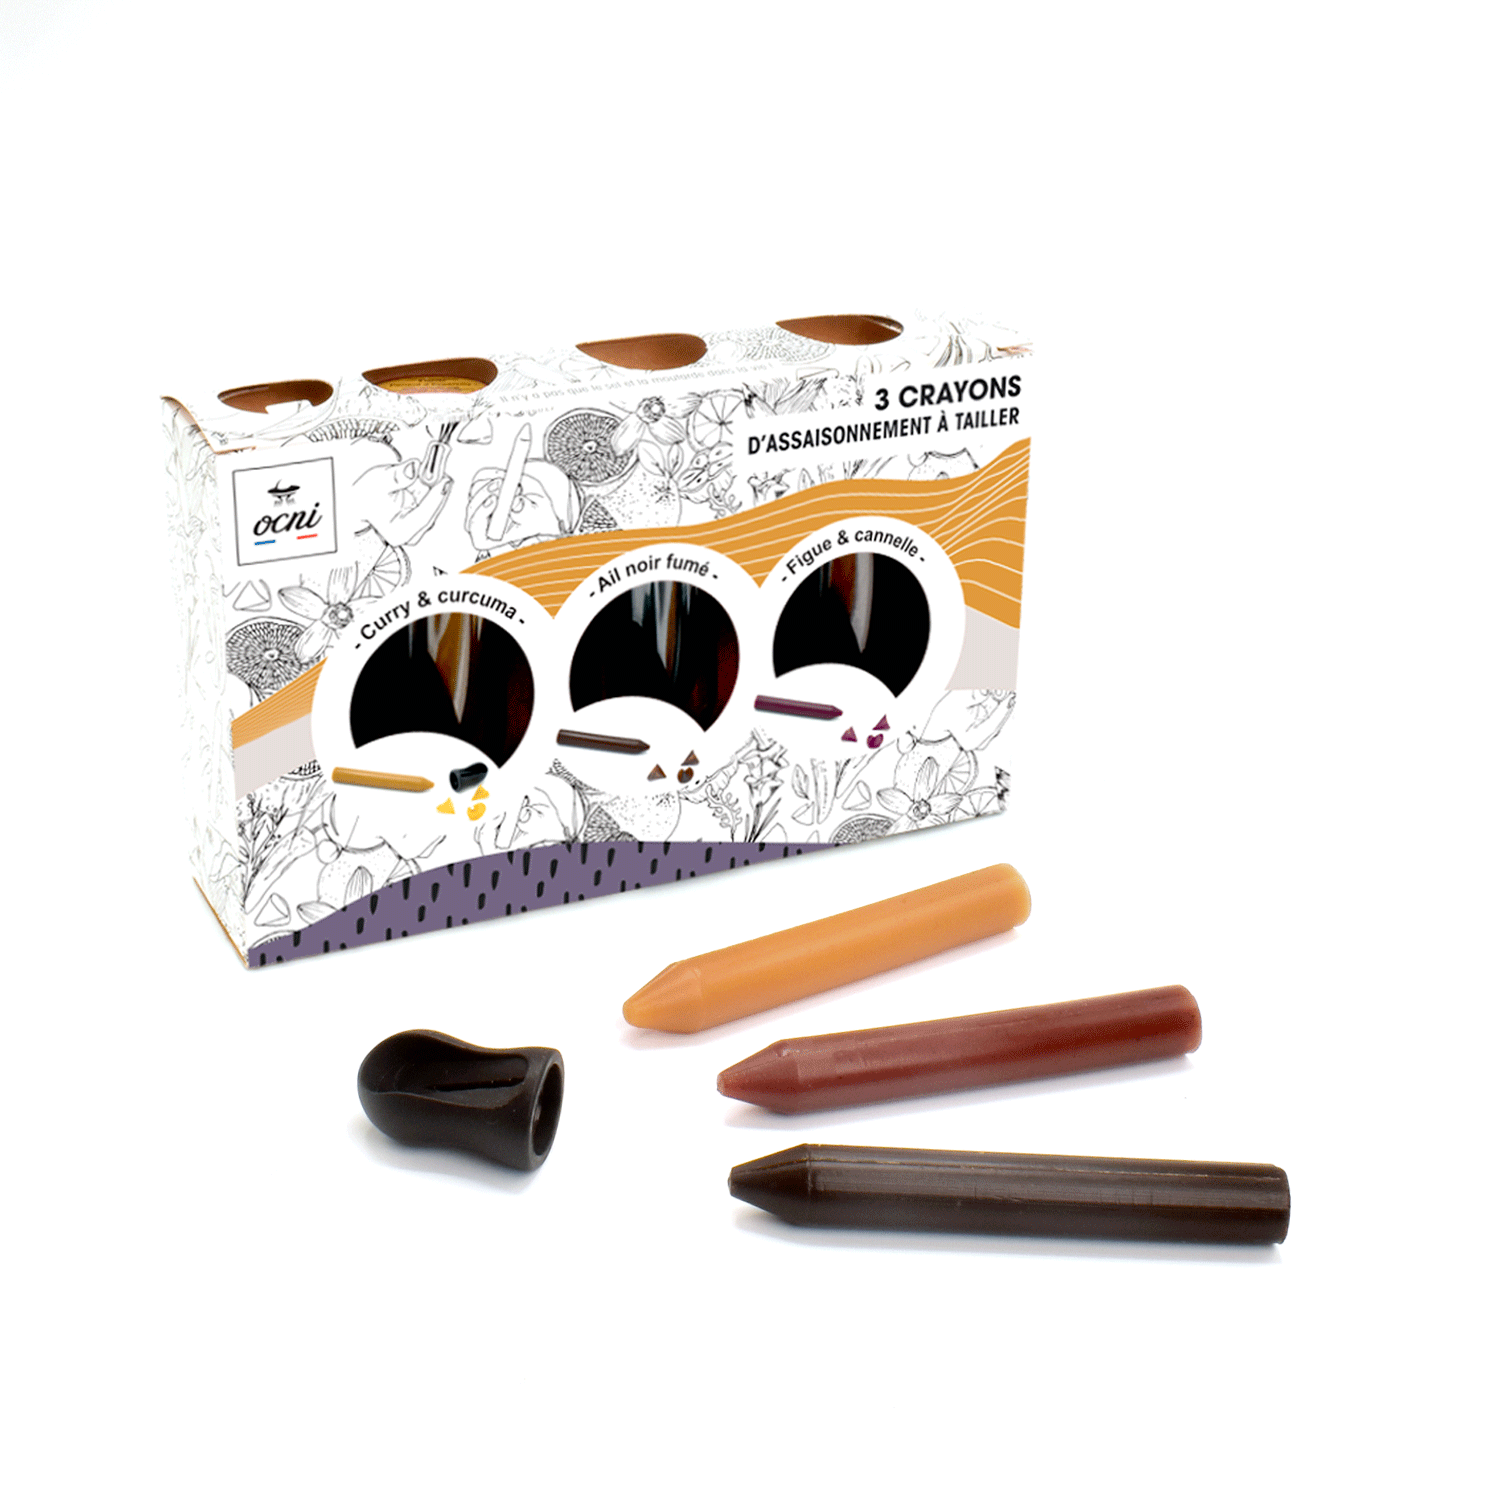 COFFRET GOURMET TRUCULENT | 3 crayons : Ail noir fumé (BIO) + Figue & cannelle (BIO) + Curry & curcuma (BIO)